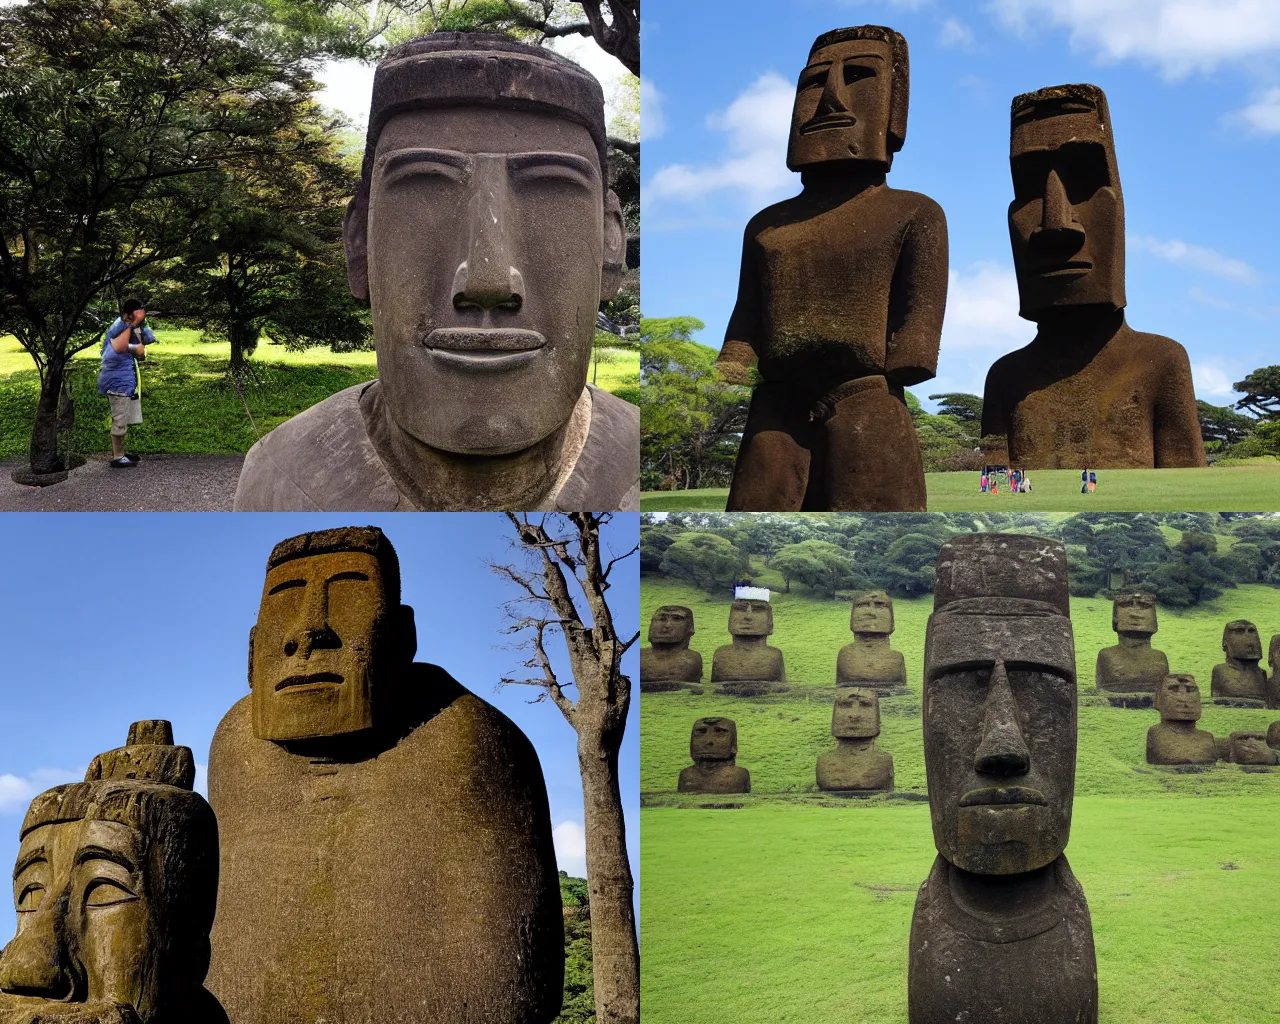 Prompt: A moai statue of Shinzo Abe